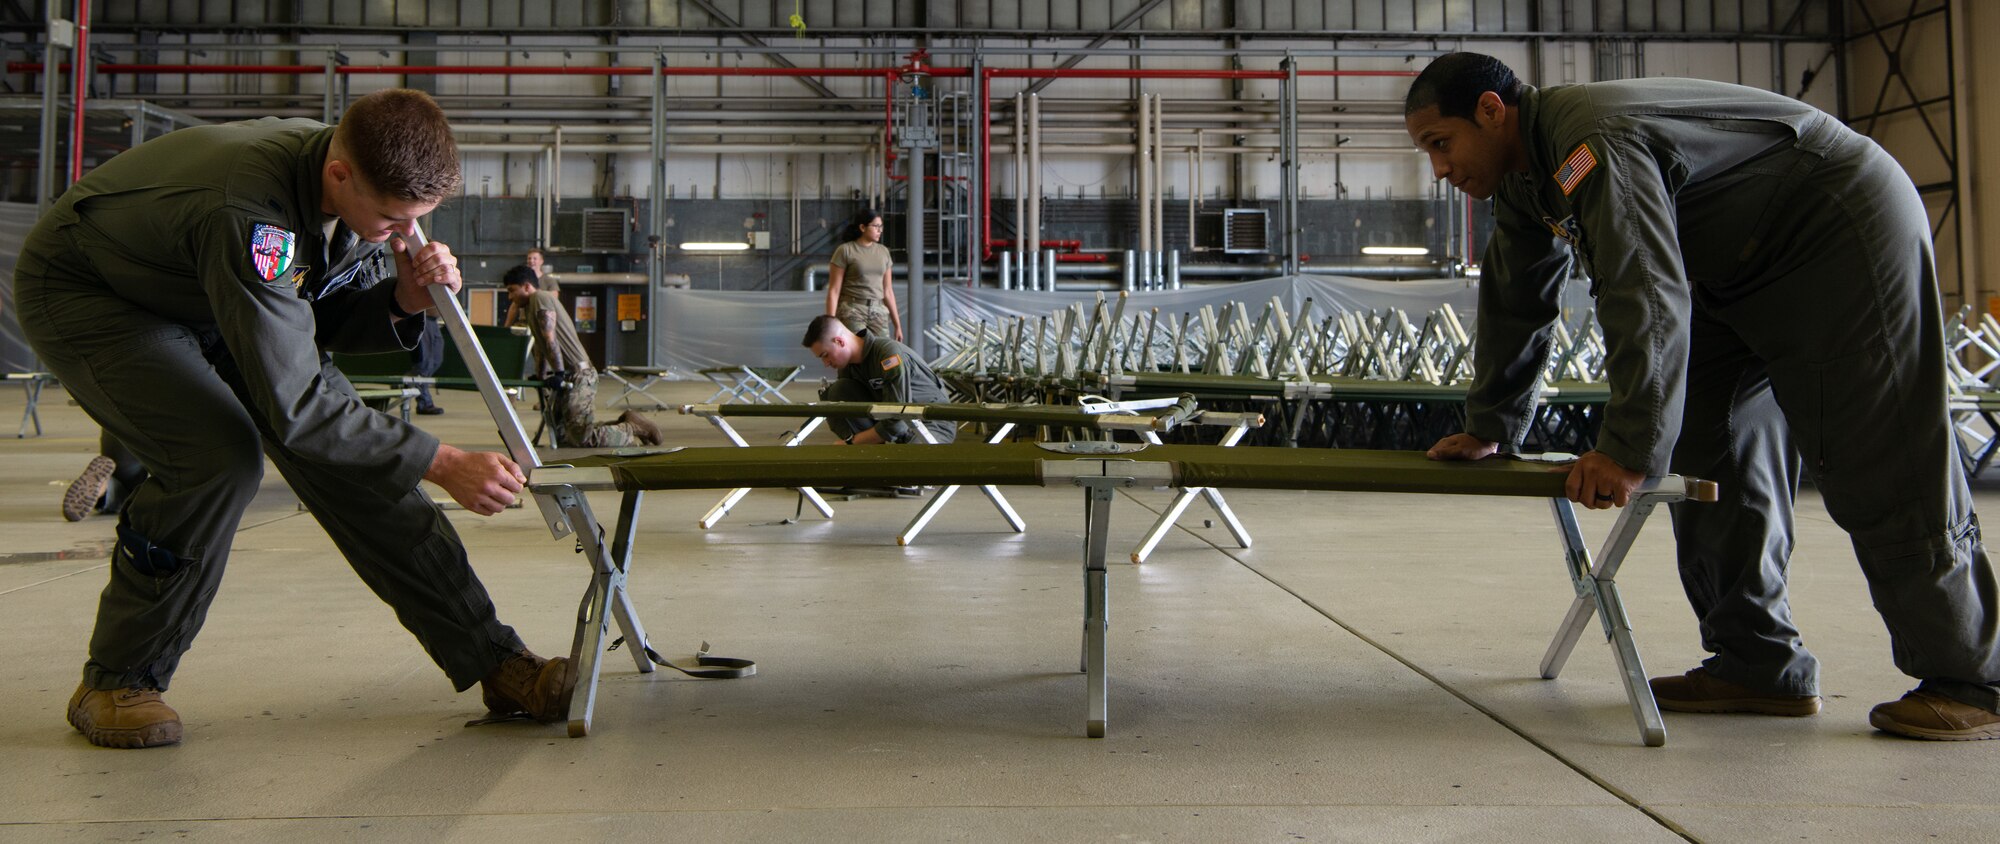 Airmen prepare cots.